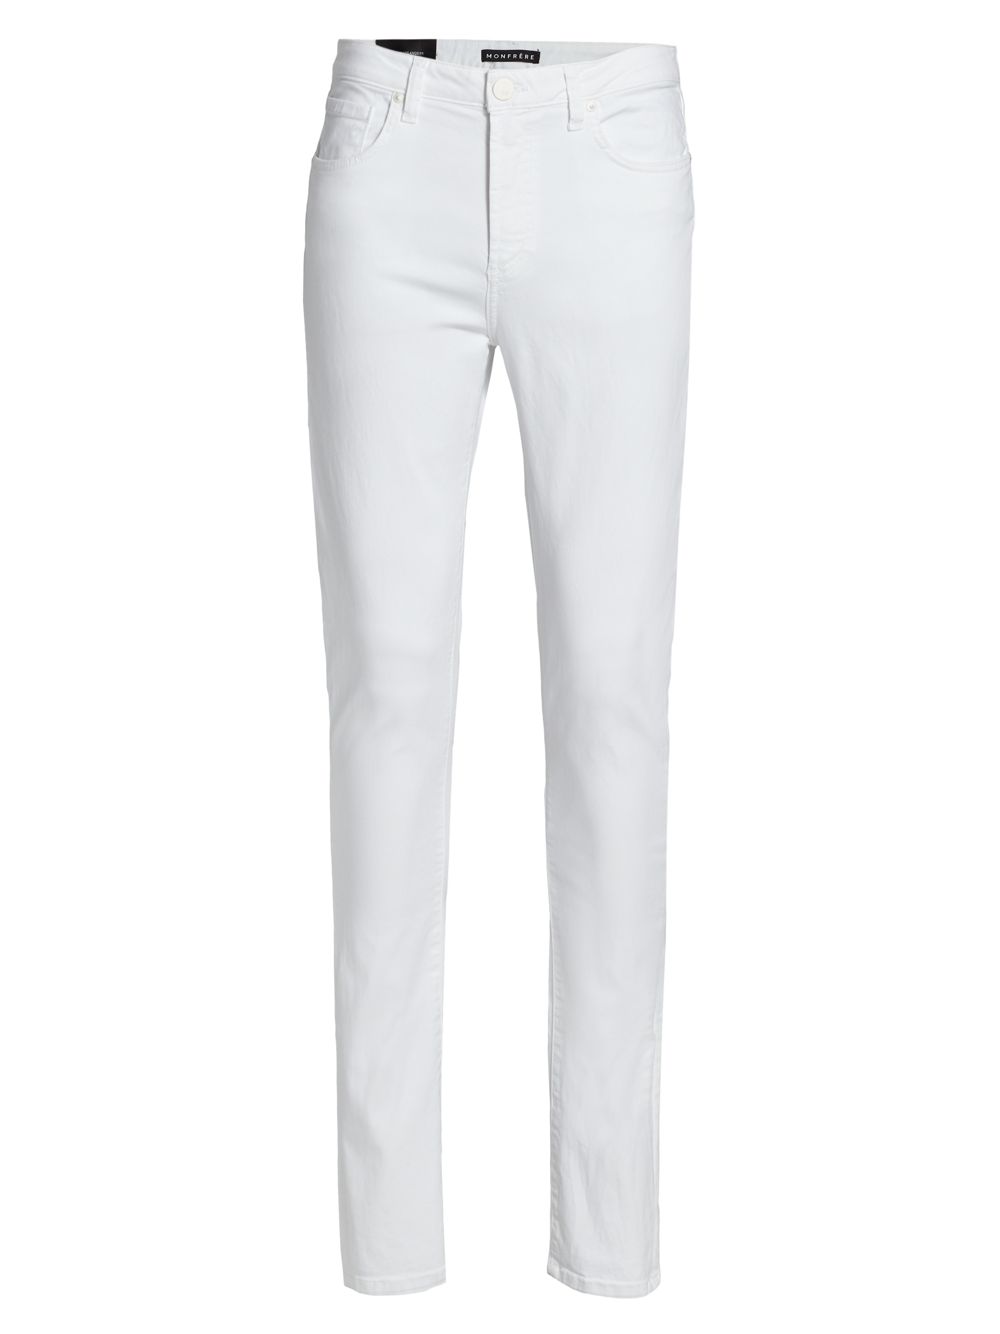 Эластичные джинсы скинни Greyson с эффектом потертости MONFRÈRE, белый джинсы скинни greyson с высокой посадкой monfrère цвет florence